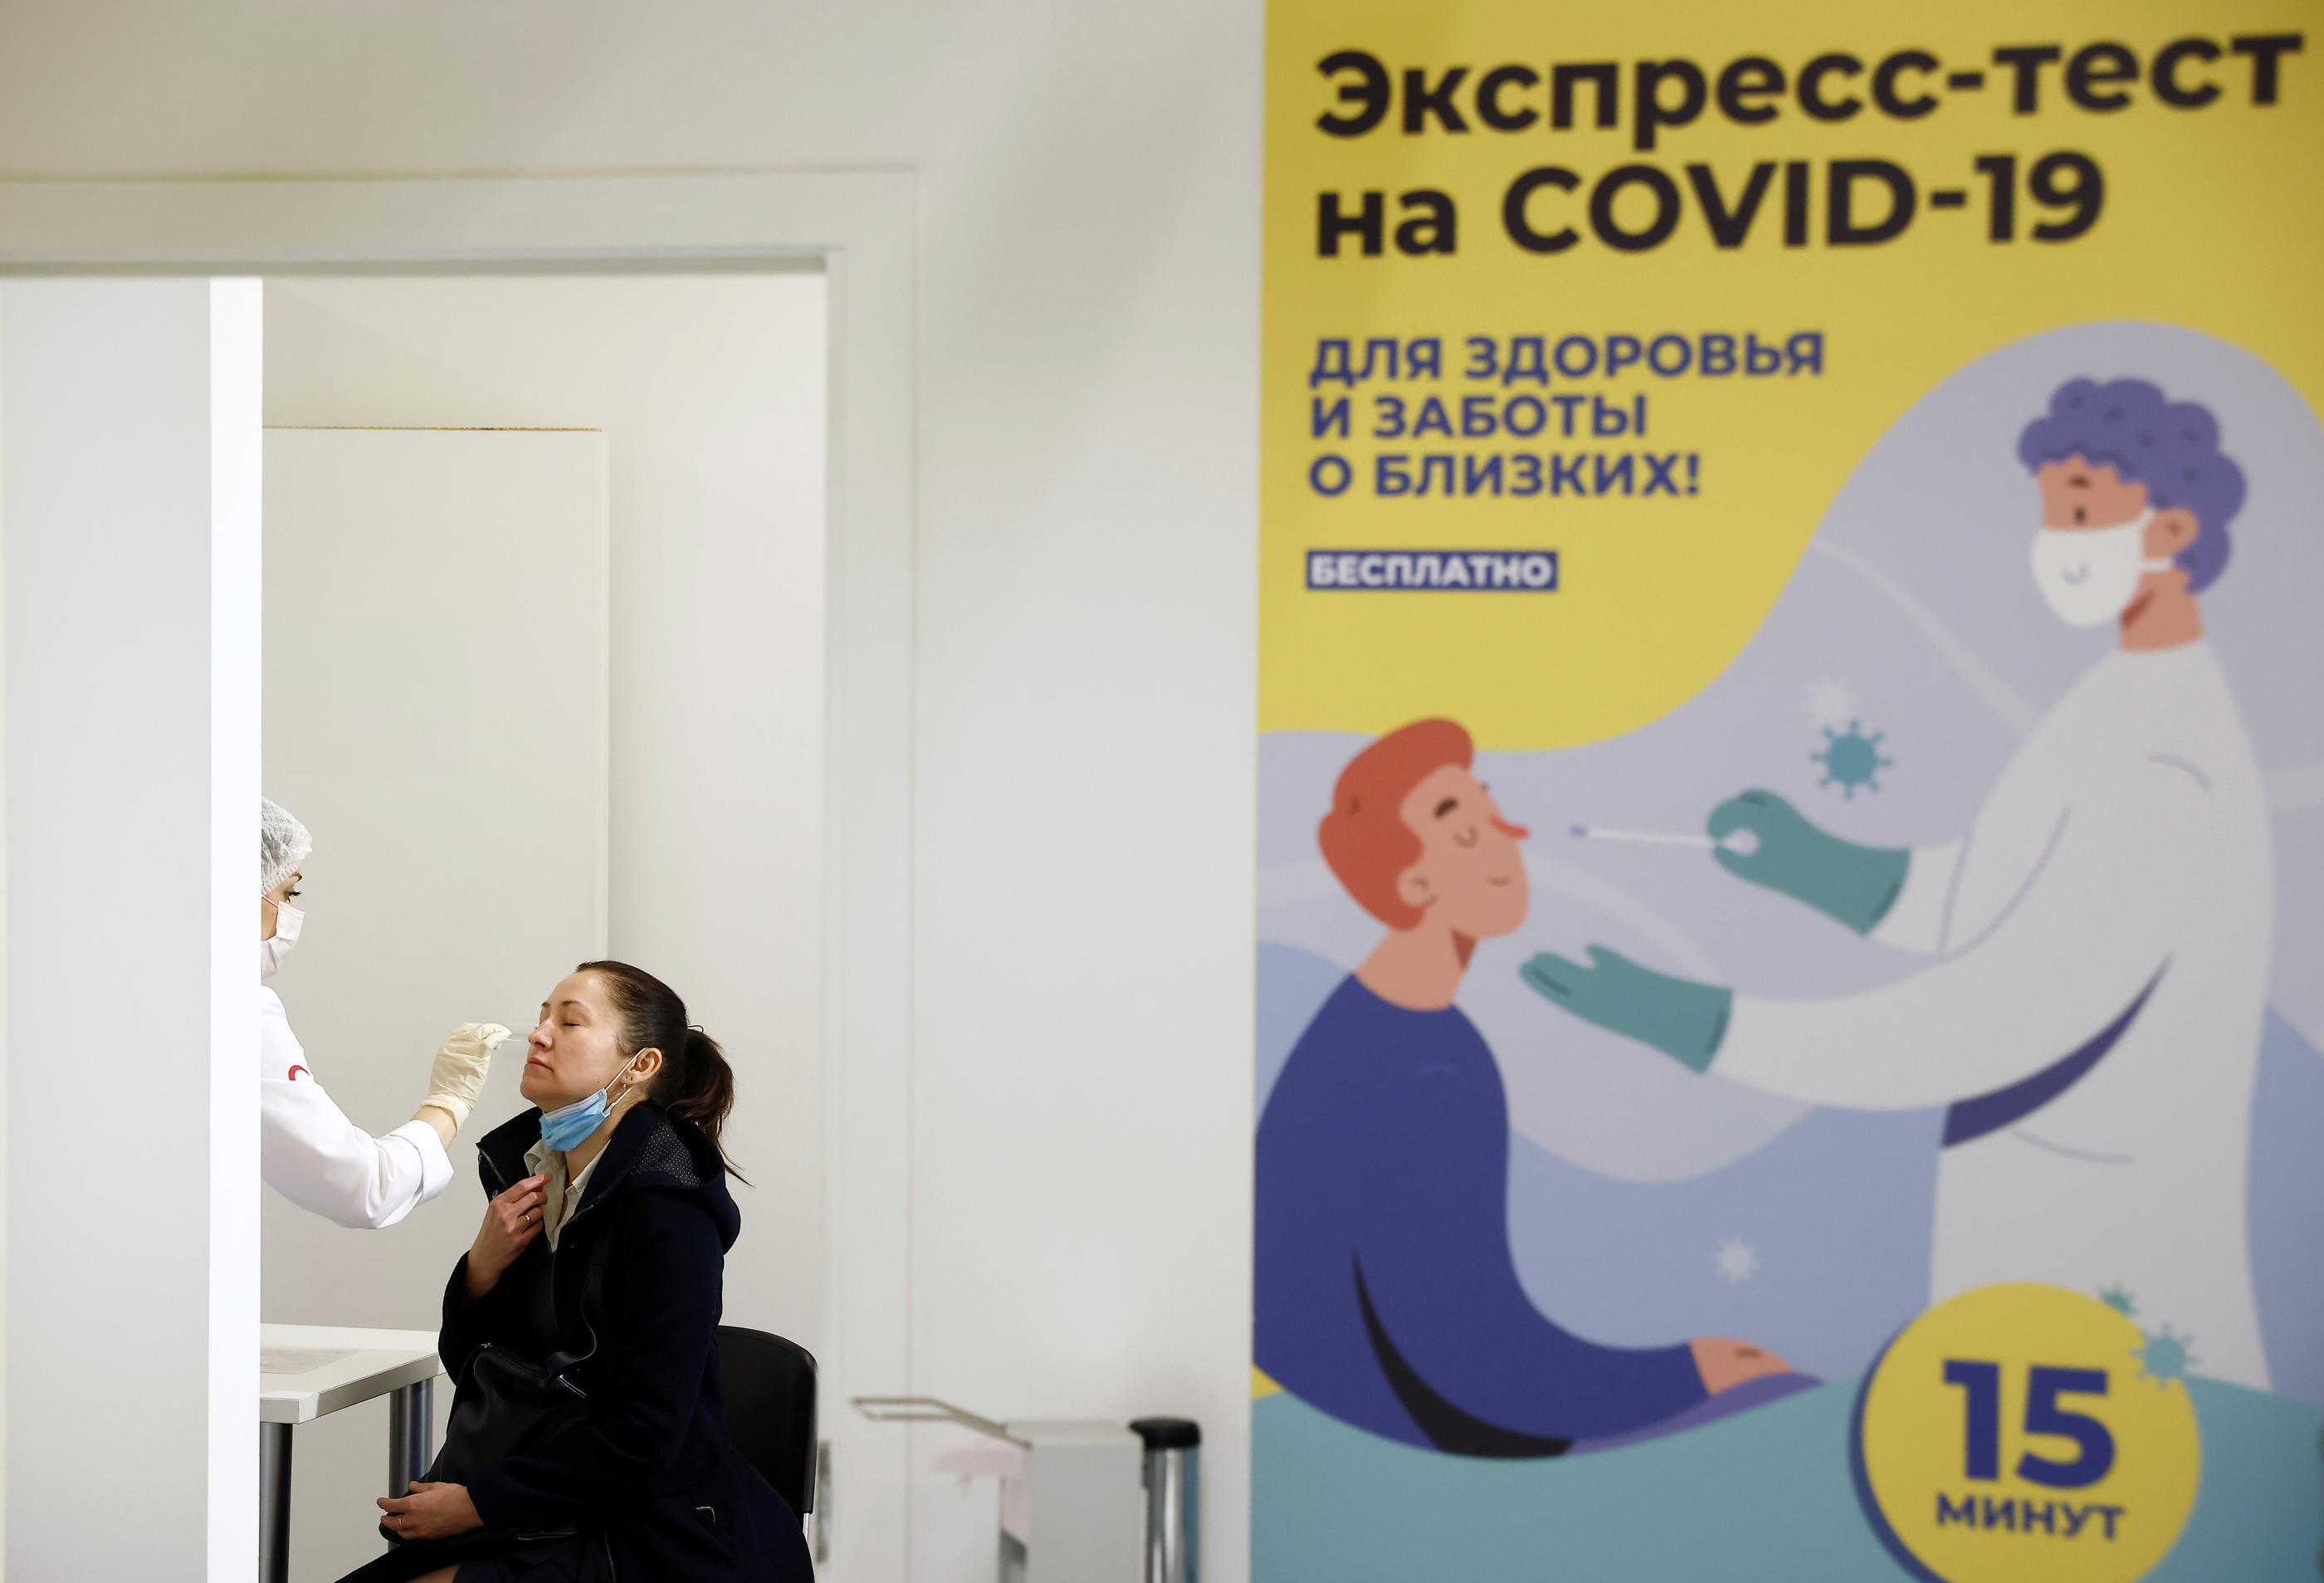 La Russie a enregistré 33 740 nouvelles contaminations en 24h selon The Guardian. REUTERS/Maxim Shemetov